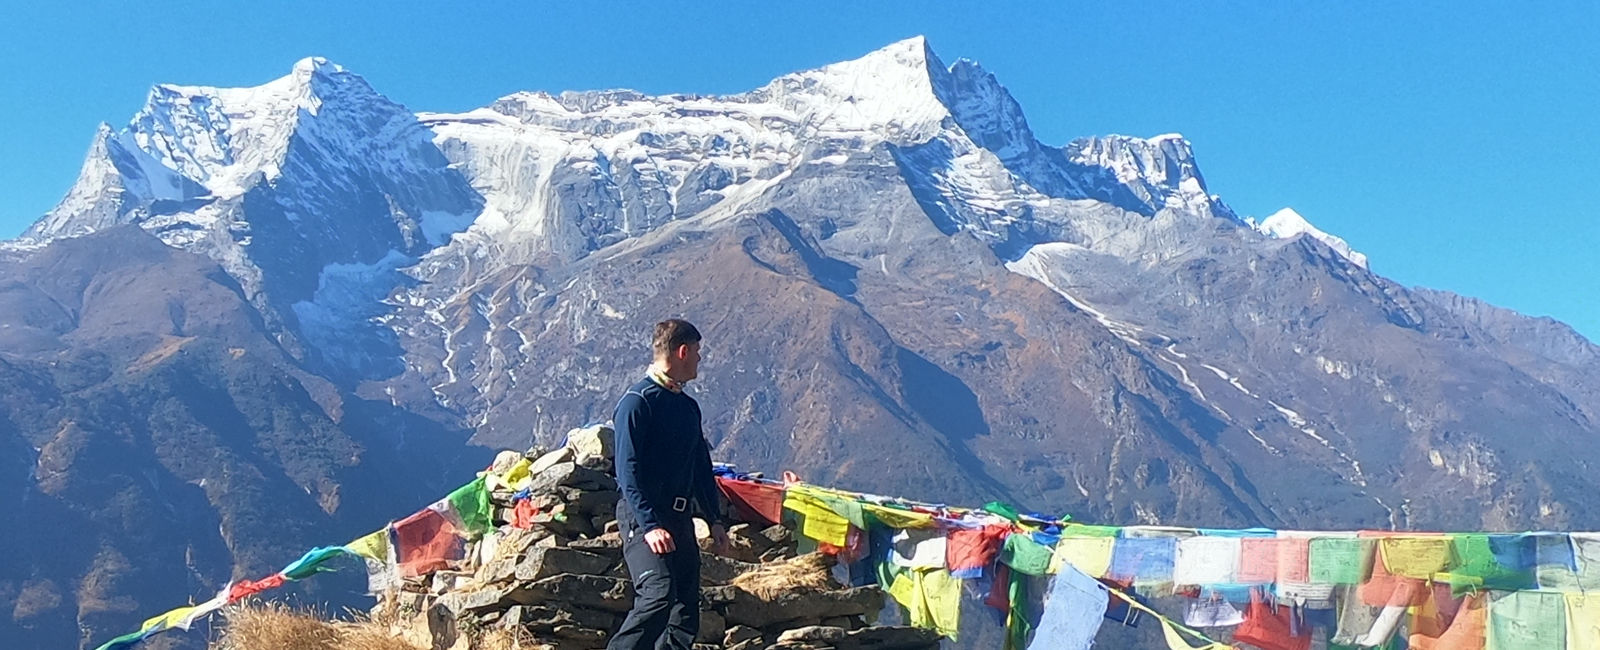 The Everest Base Camp Trek for 2021